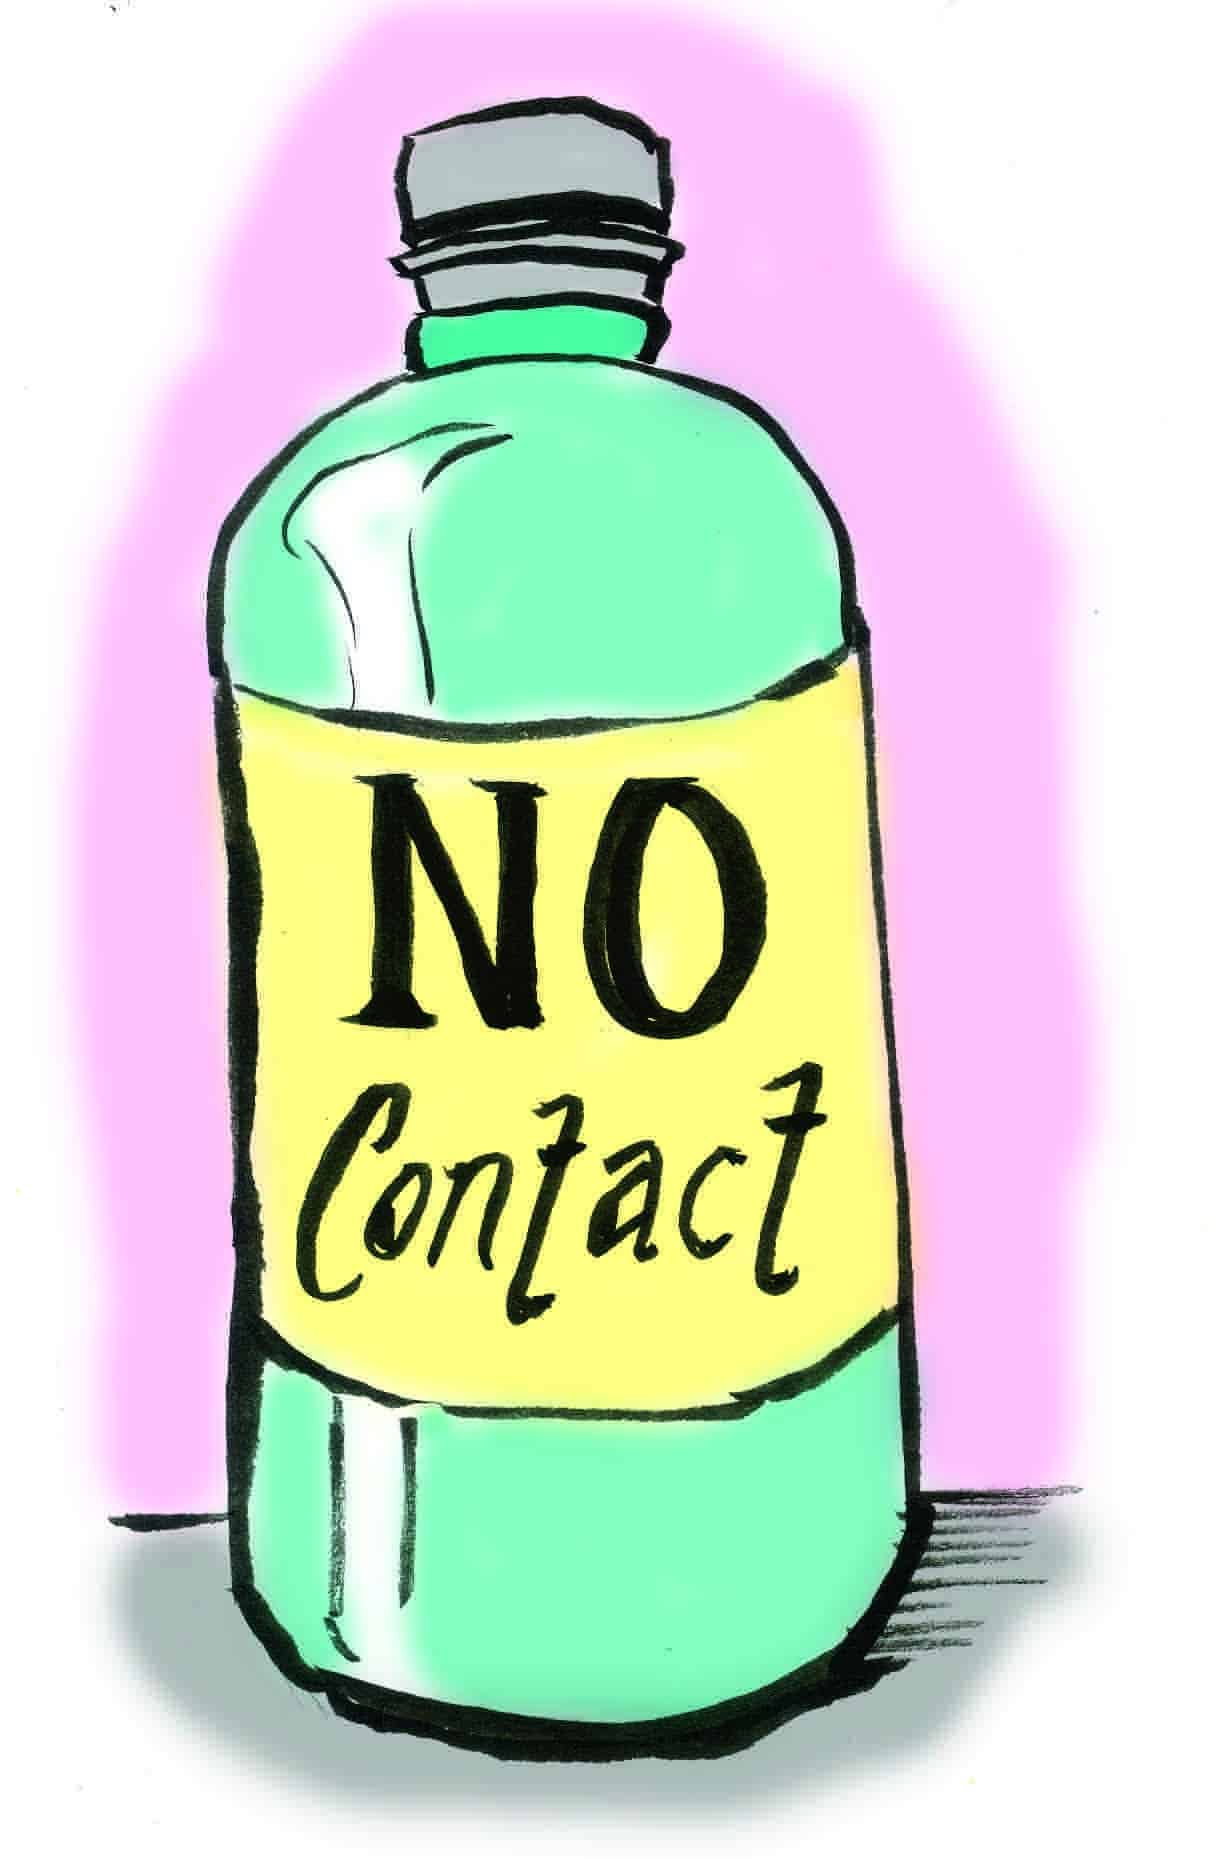 no contact